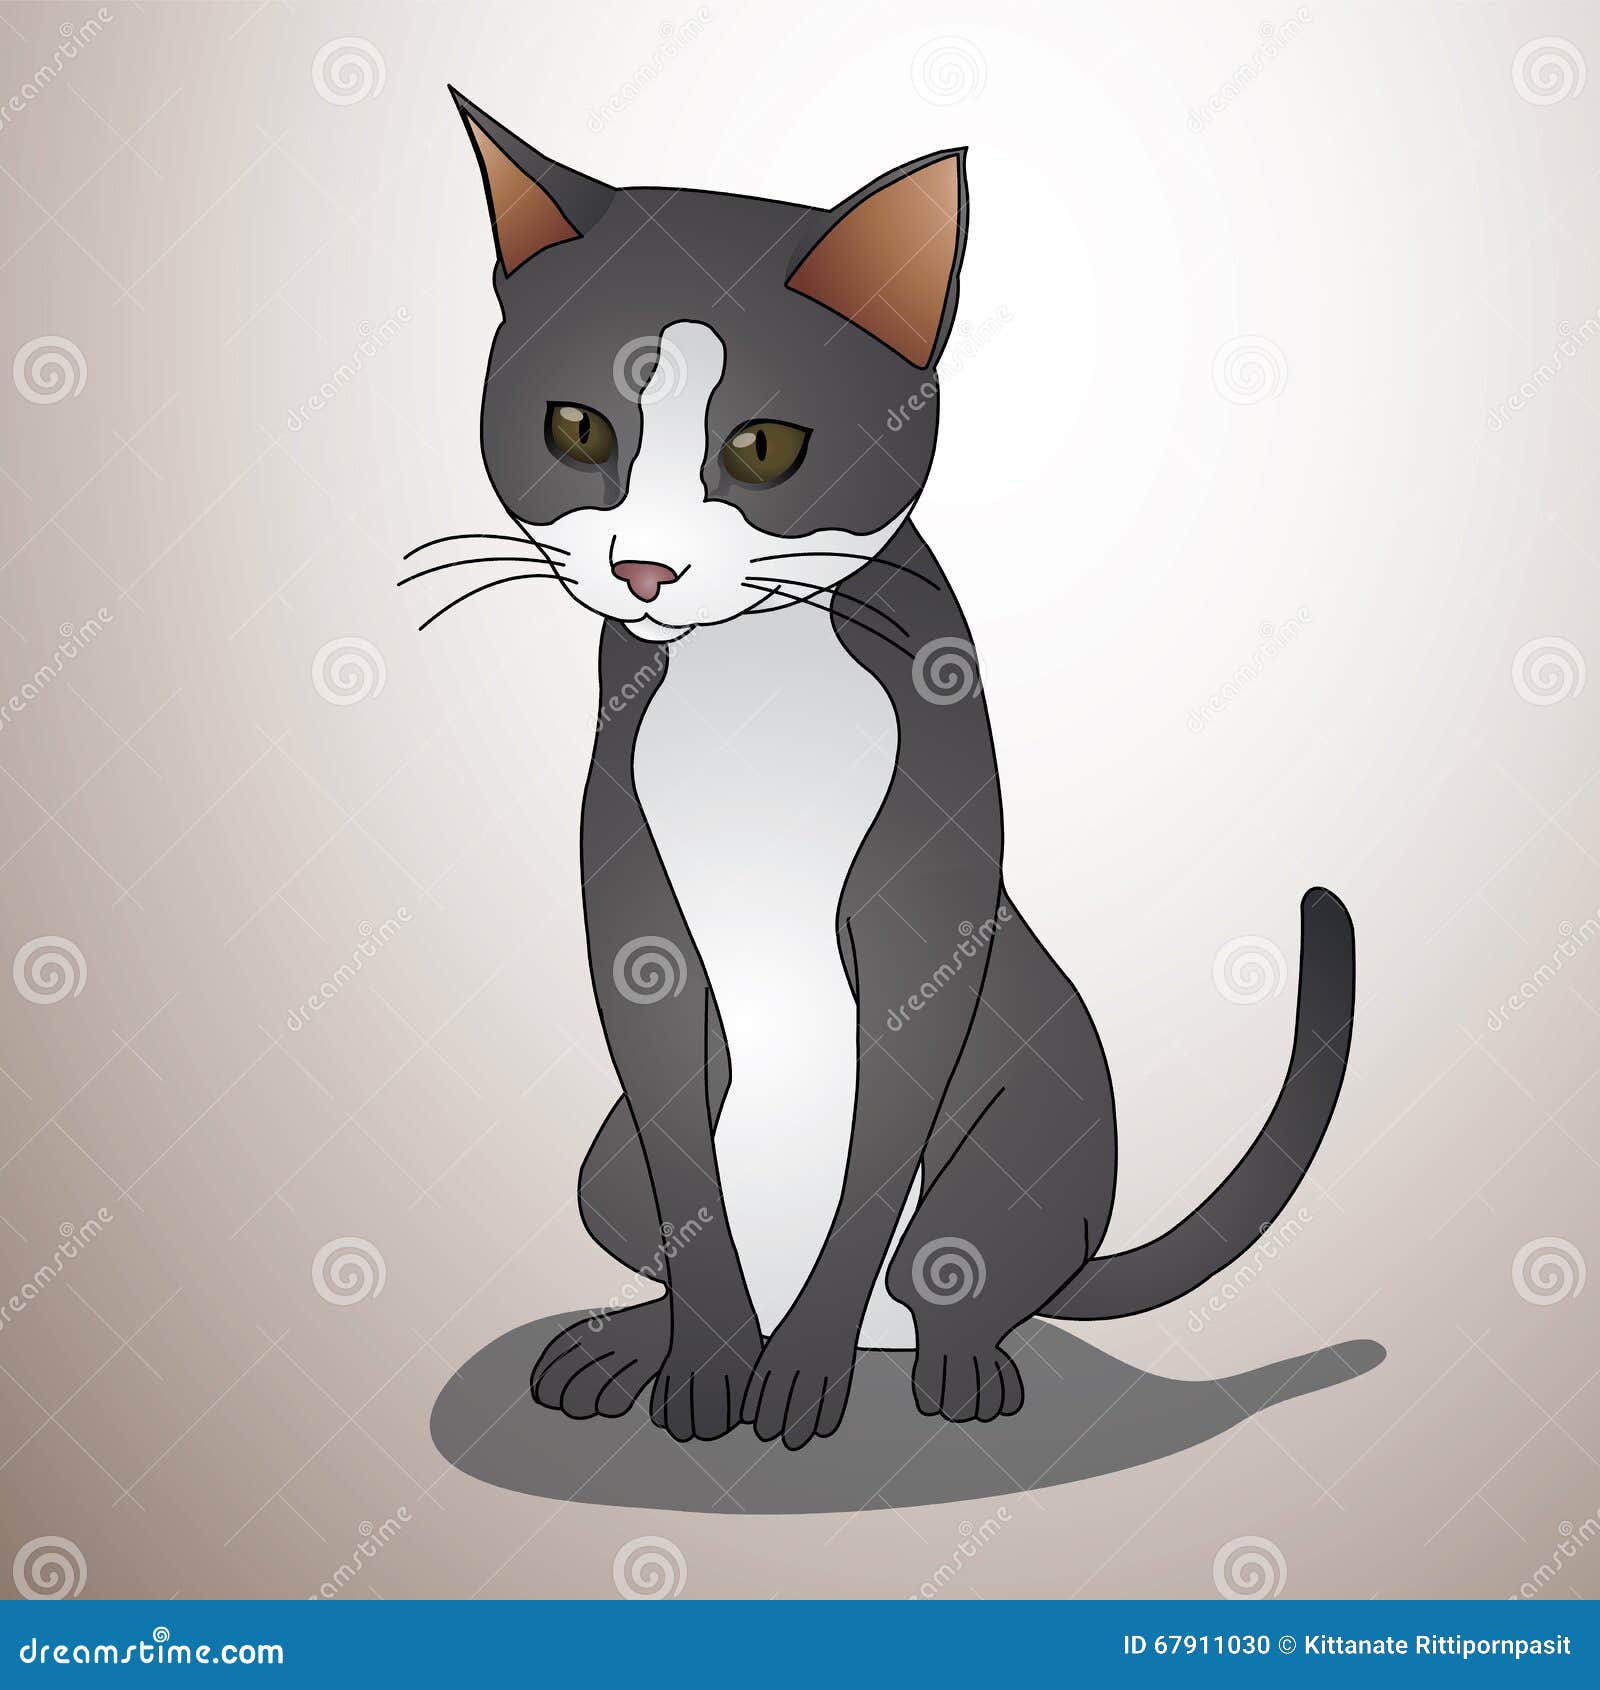 Vector Illustration Black Cat Stock Vector Illustration Of Illustrator Cartoon